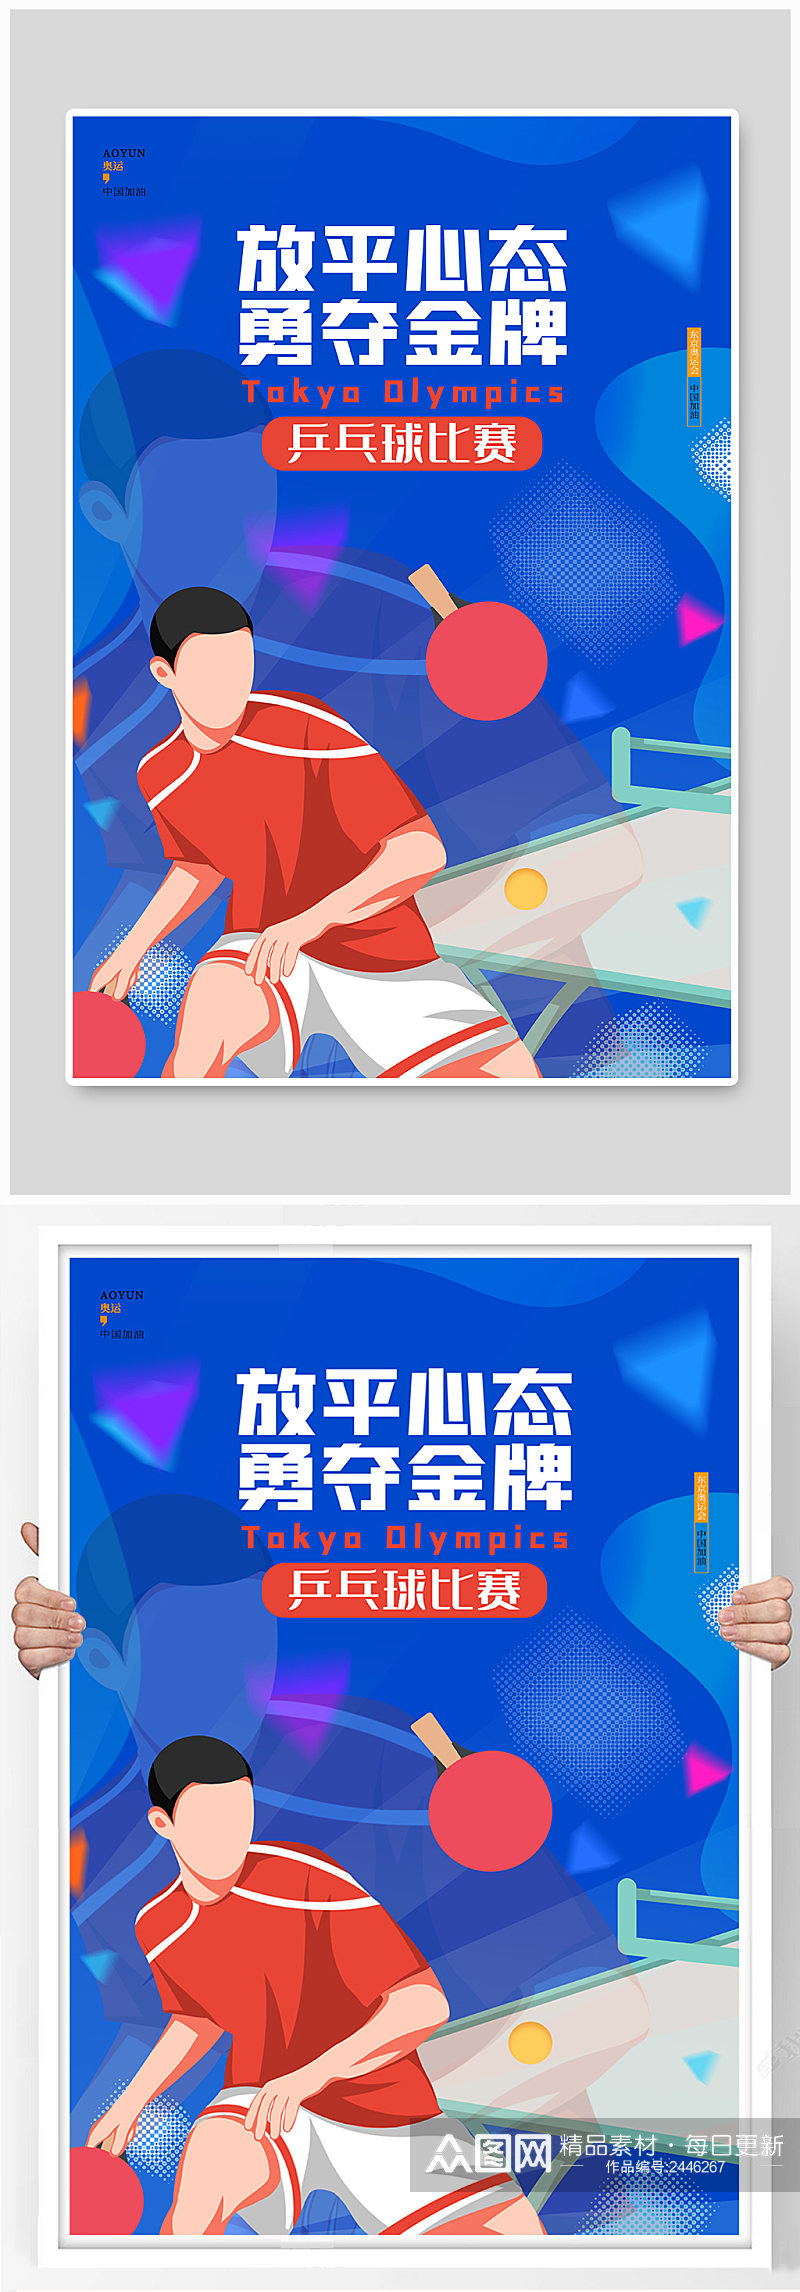 炫酷东京奥运会中国加油海报素材